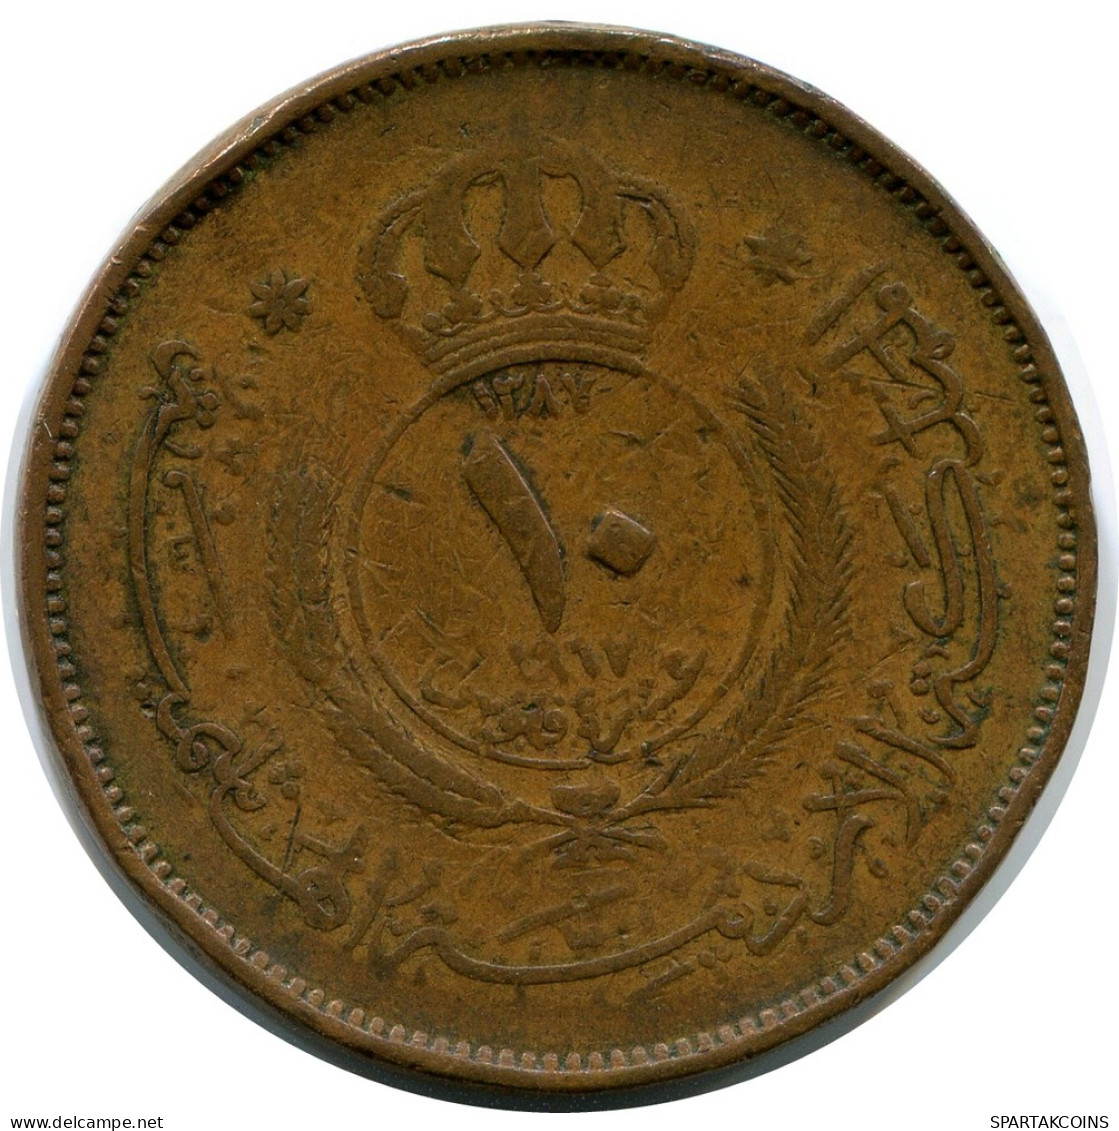 10 FILS 1387-1967 JORDAN Islamic Coin #AR005.U - Jordanien